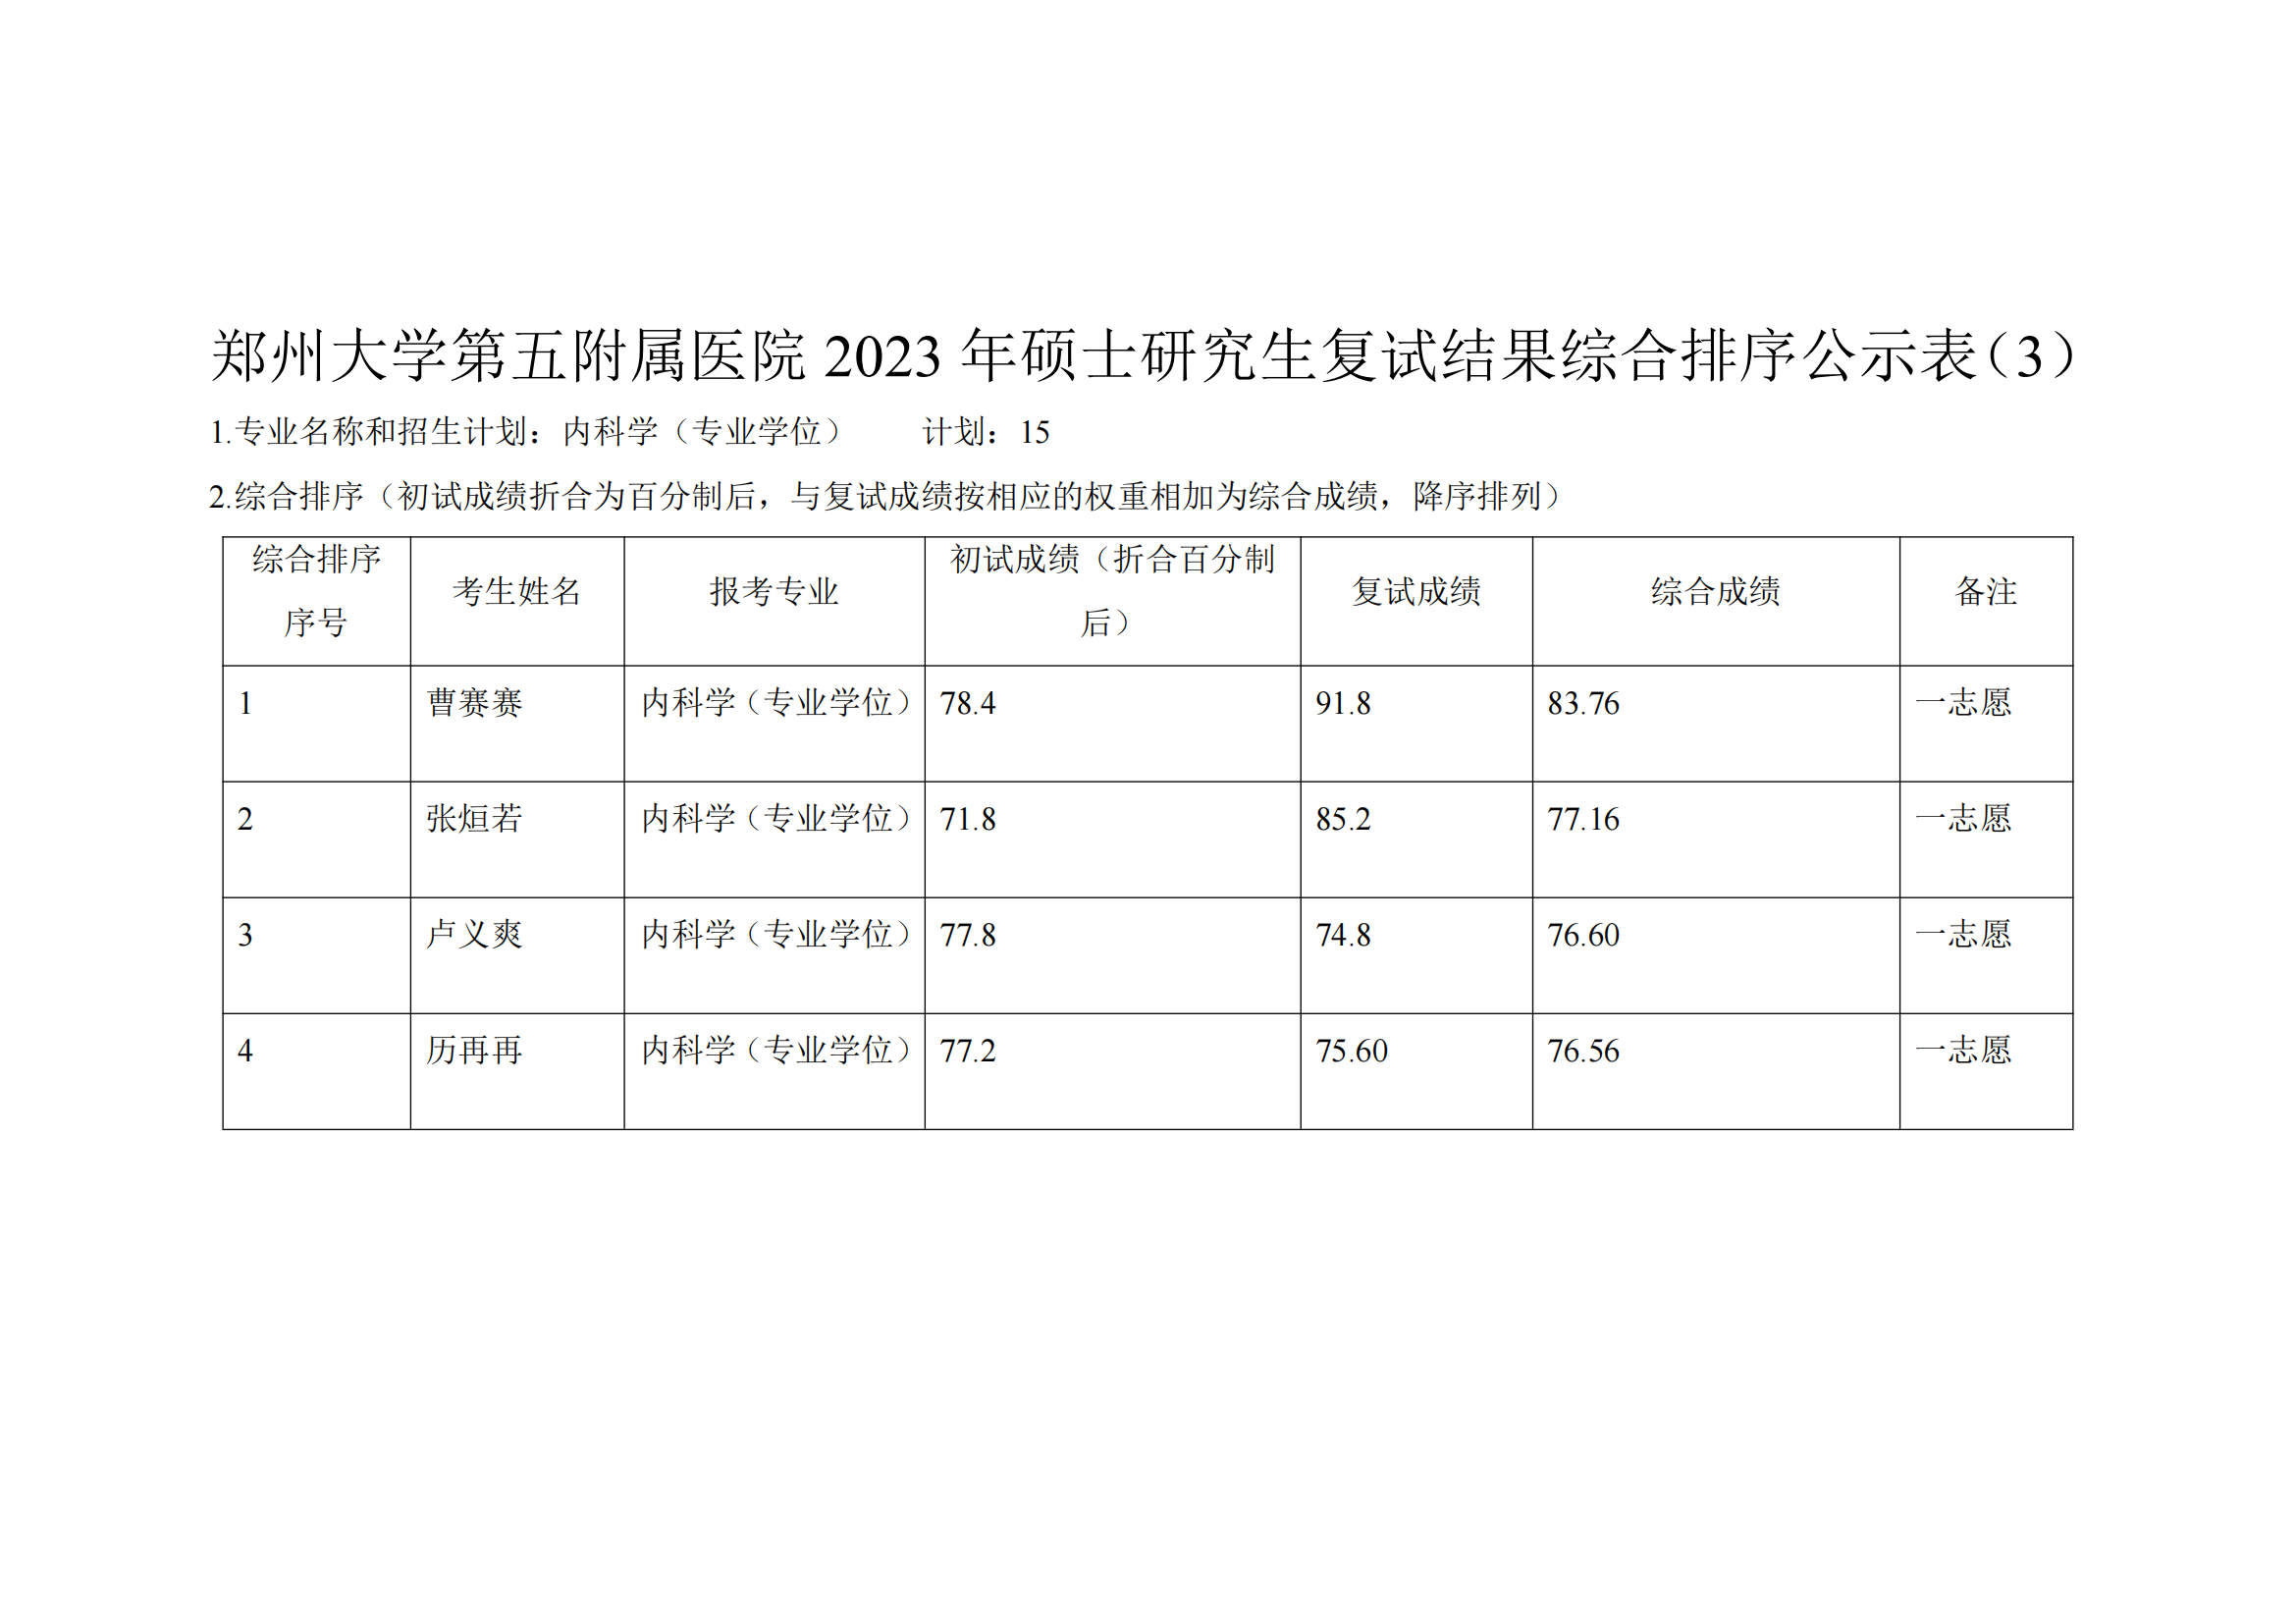 郑州大学第五附属医院2023年硕士研究生复试结果综合排序公示表（3）_00.png